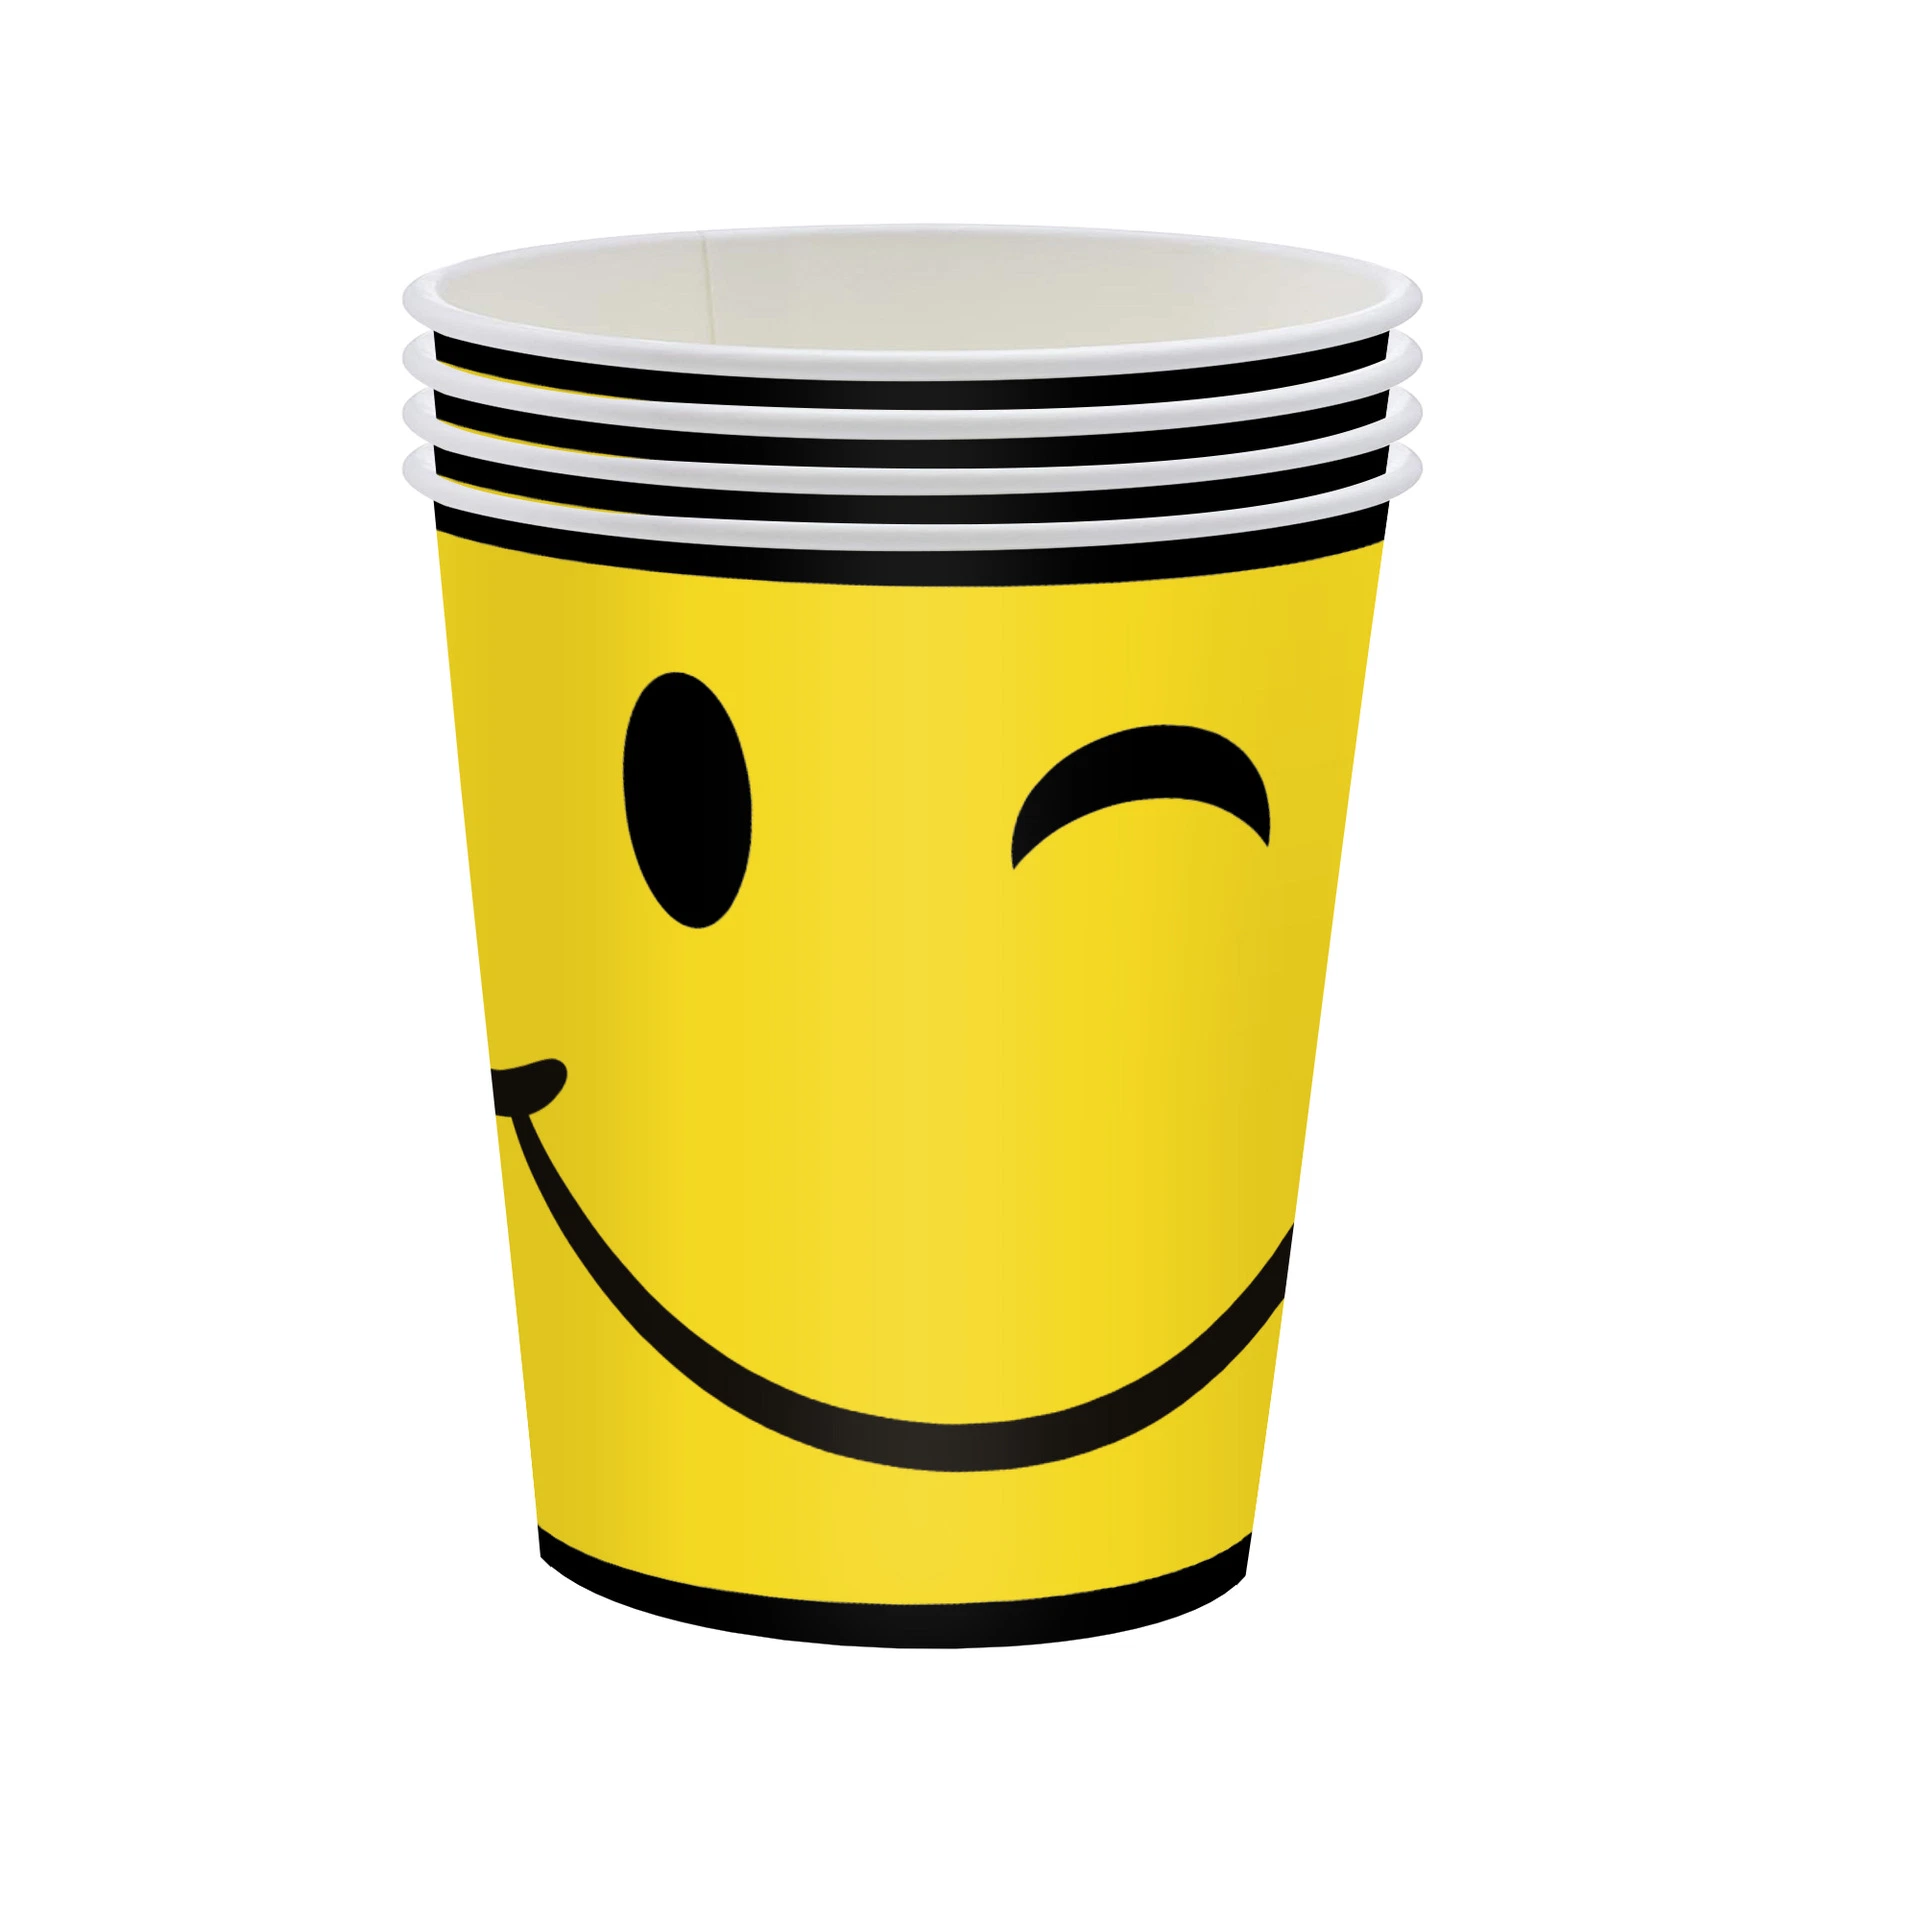 Вечеринка Декорации столовая посуда серии Smile чашка тарелка Напкин одноразовая бумага Набор столовых принадлежностей